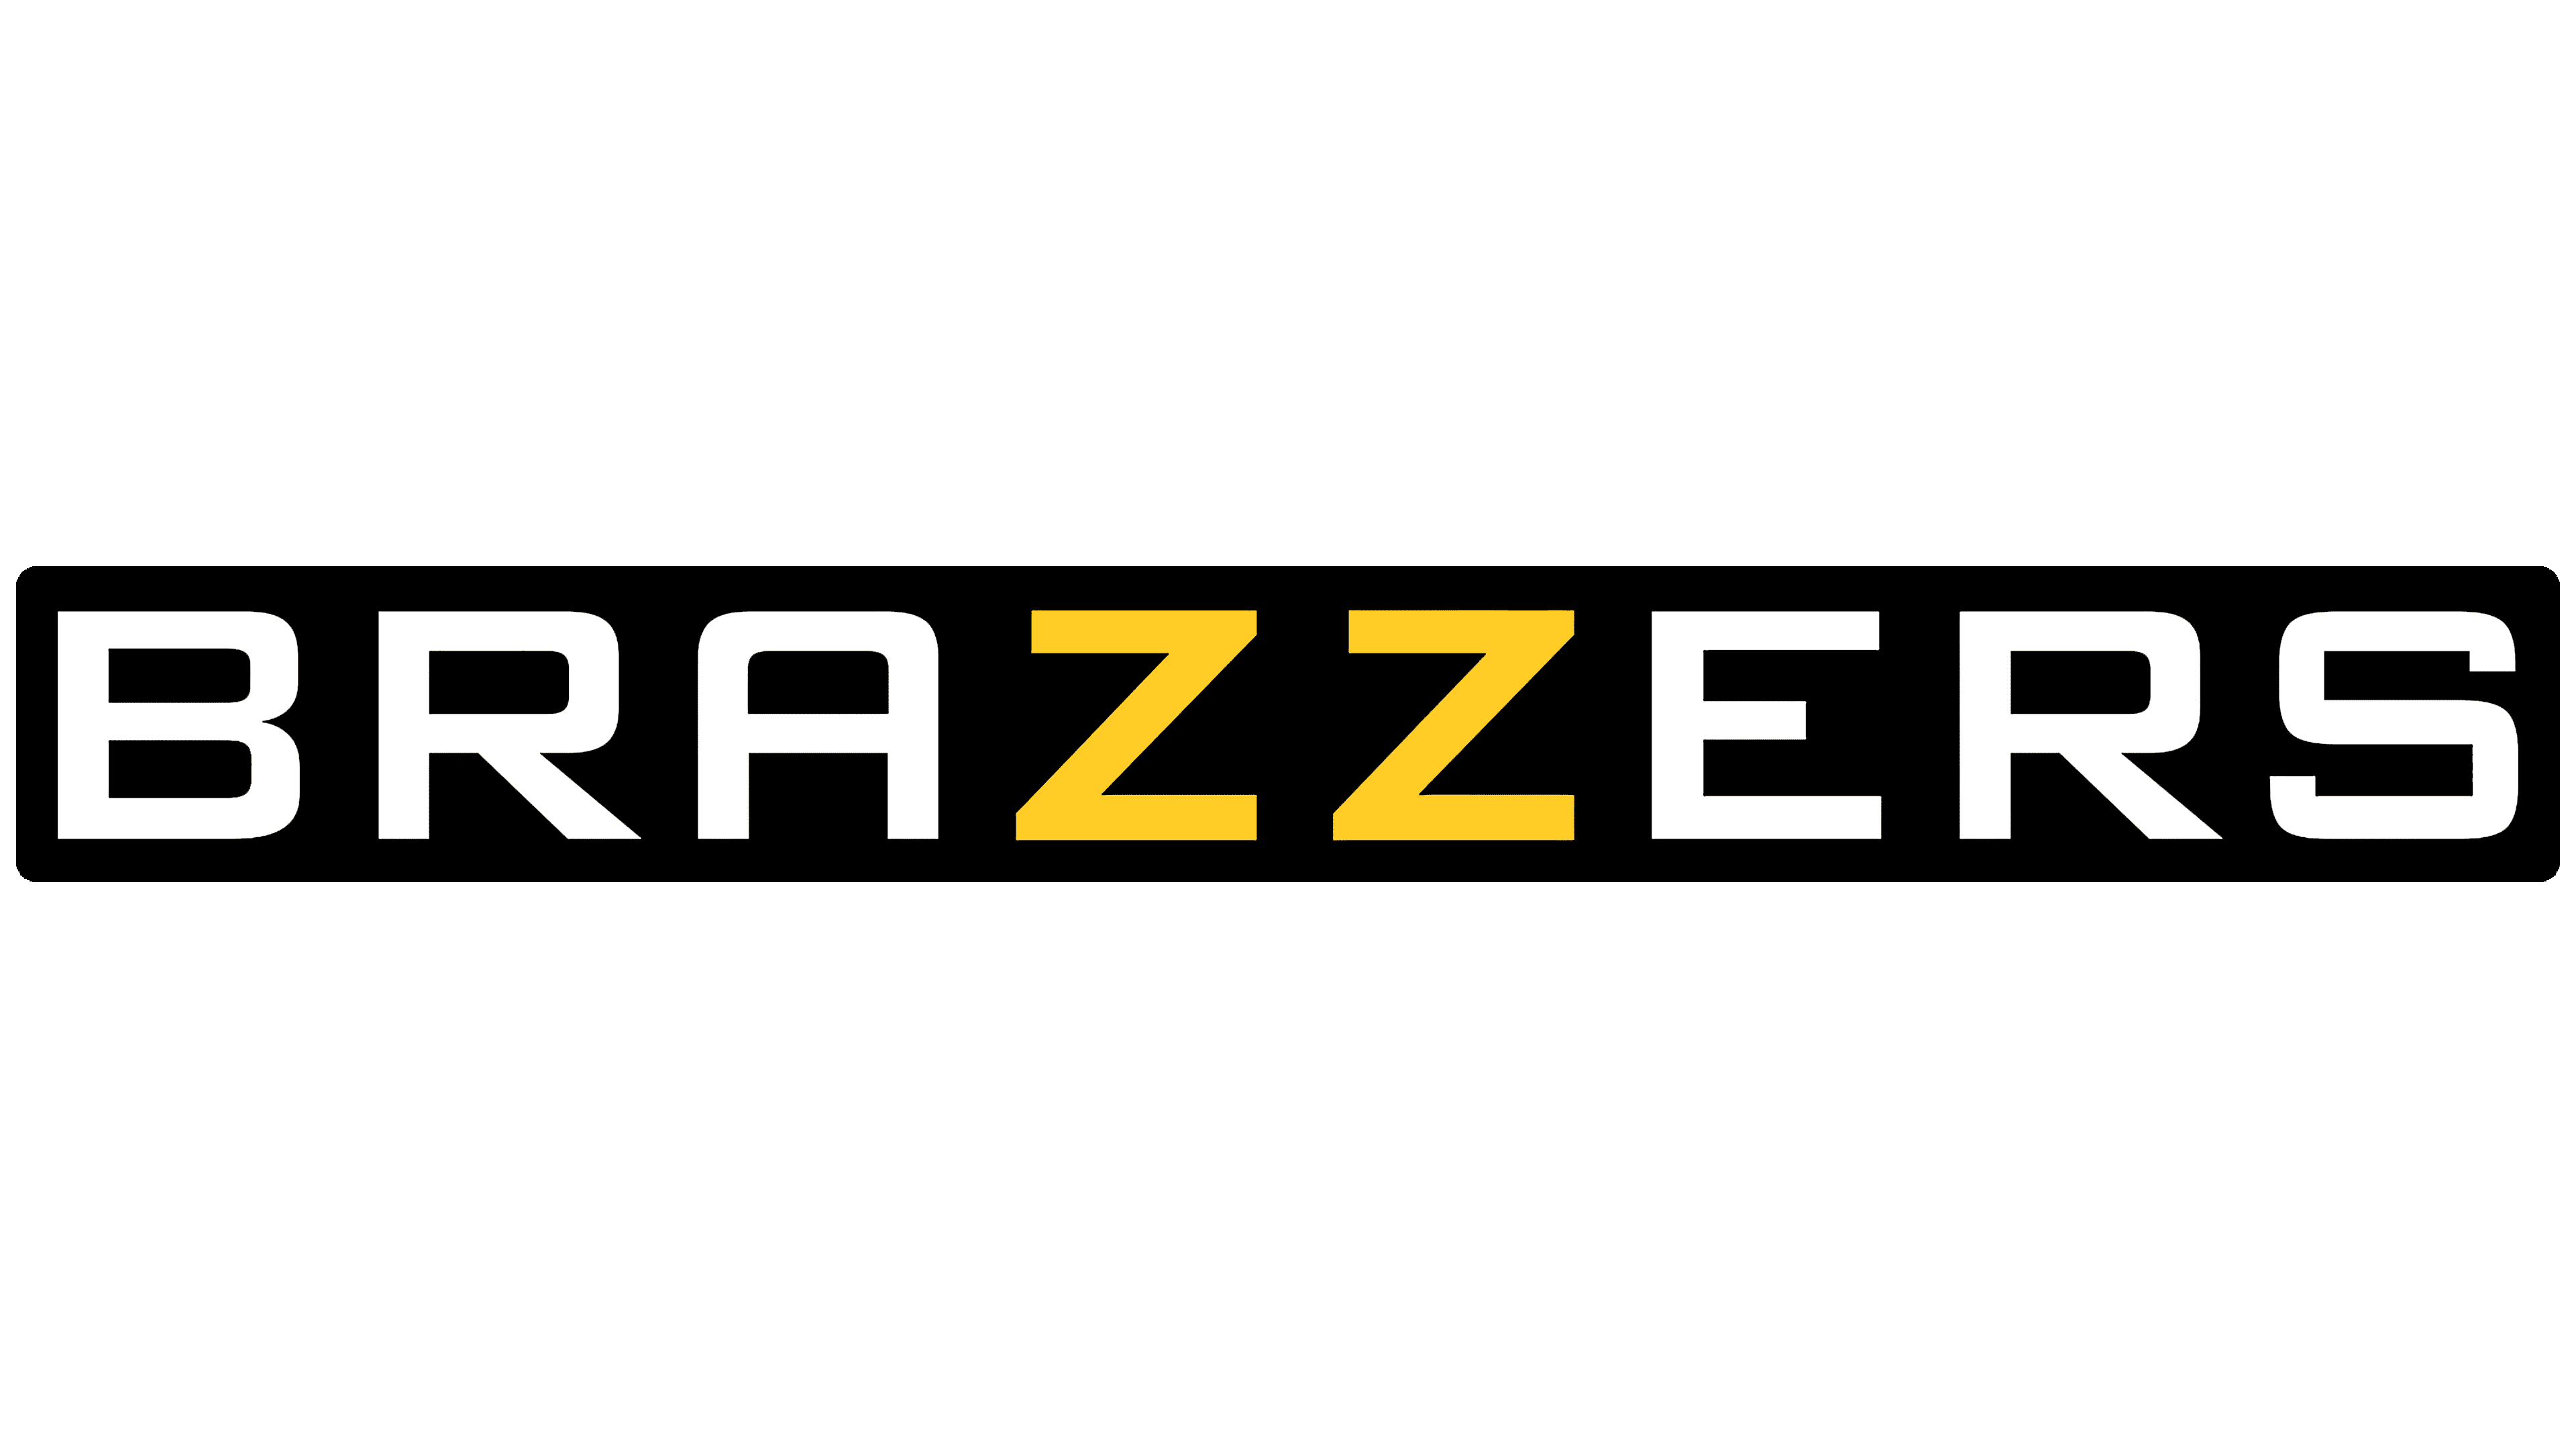 Brazzers Logo Y S Mbolo Significado Historia Png Marca